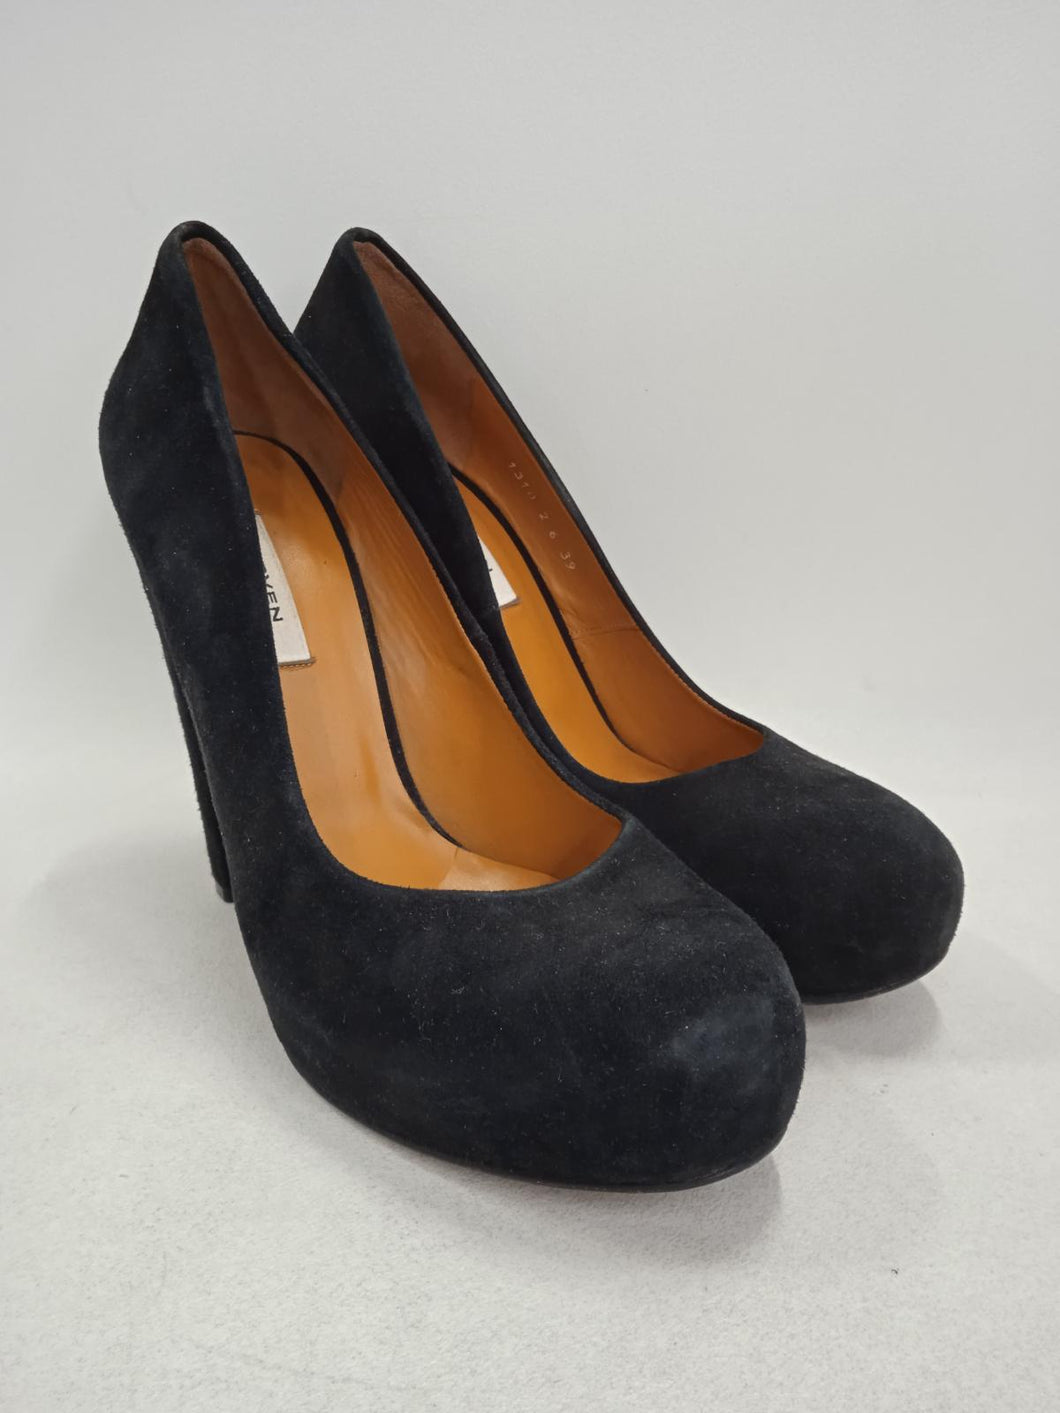 CARVEN Ladies Black Suede Leather Platform Pump Shoes Size EU39 UK6